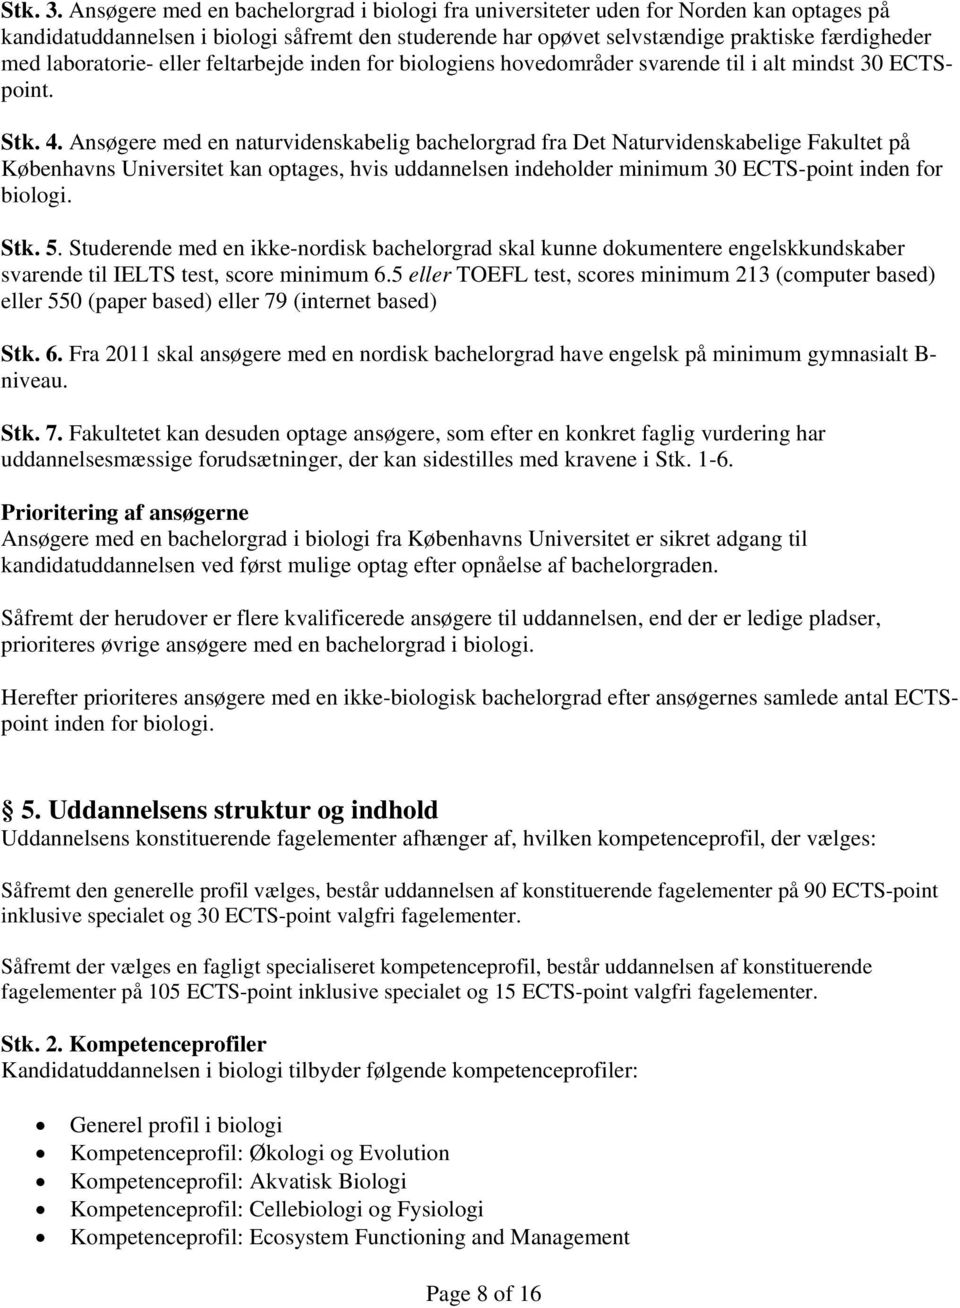 laboratorie- eller feltarbejde inden for biologiens hovedområder svarende til i alt mindst 30 ECTSpoint. Stk. 4.